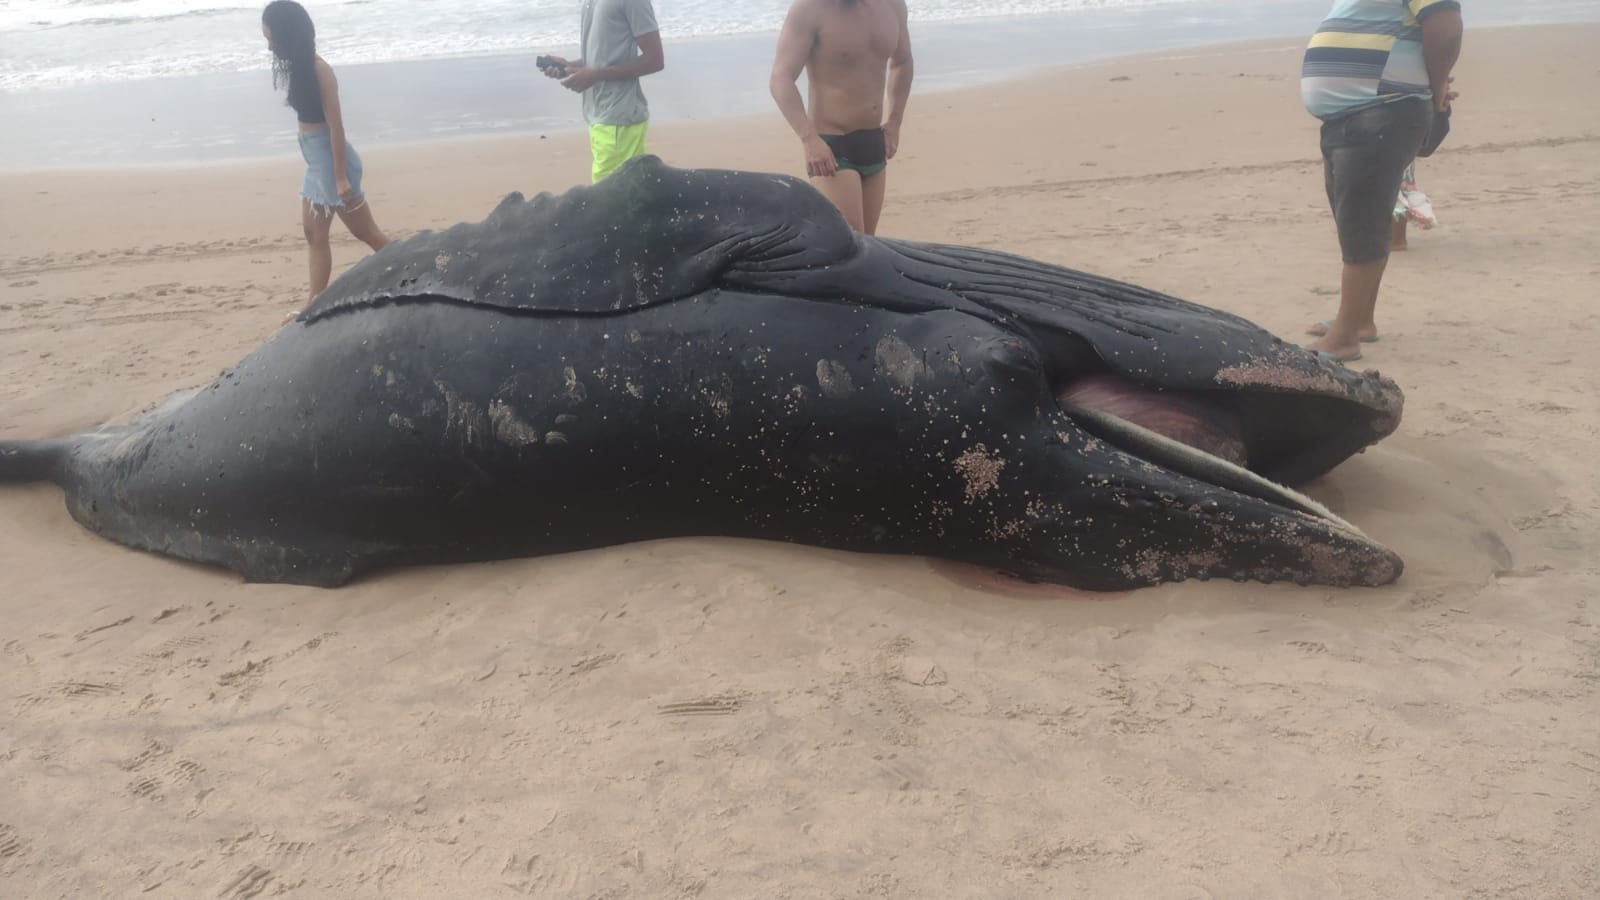 Filhote de baleia é encontrado morto em praia na Região Metropolitana de Salvador